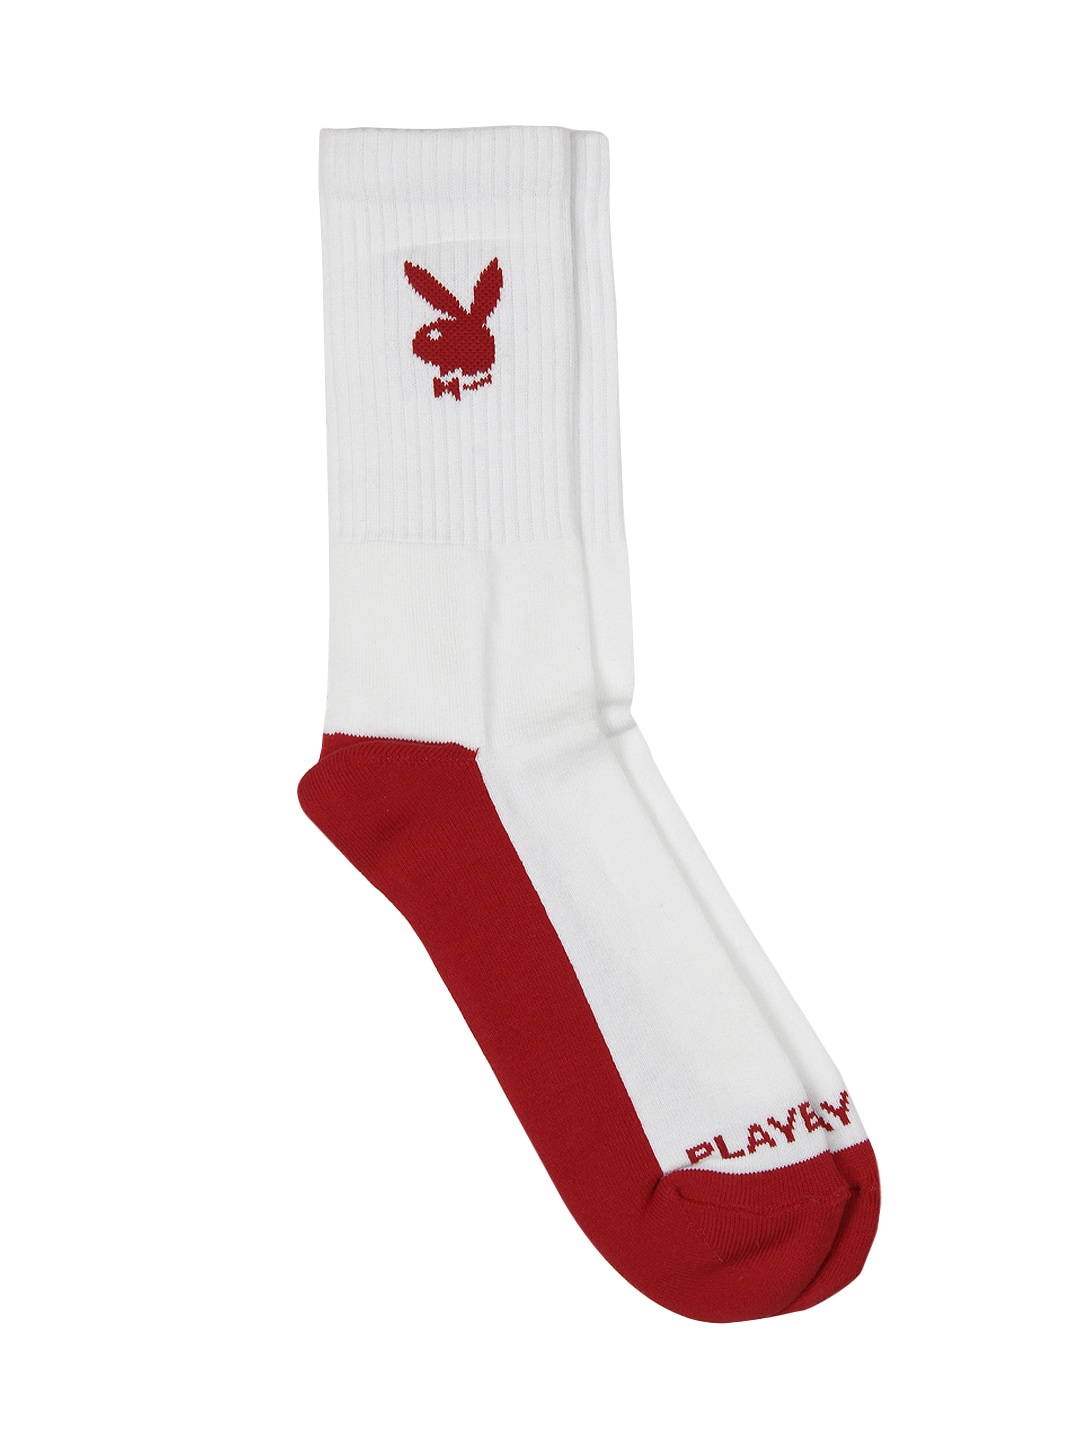 Playboy Men White & Red Socks